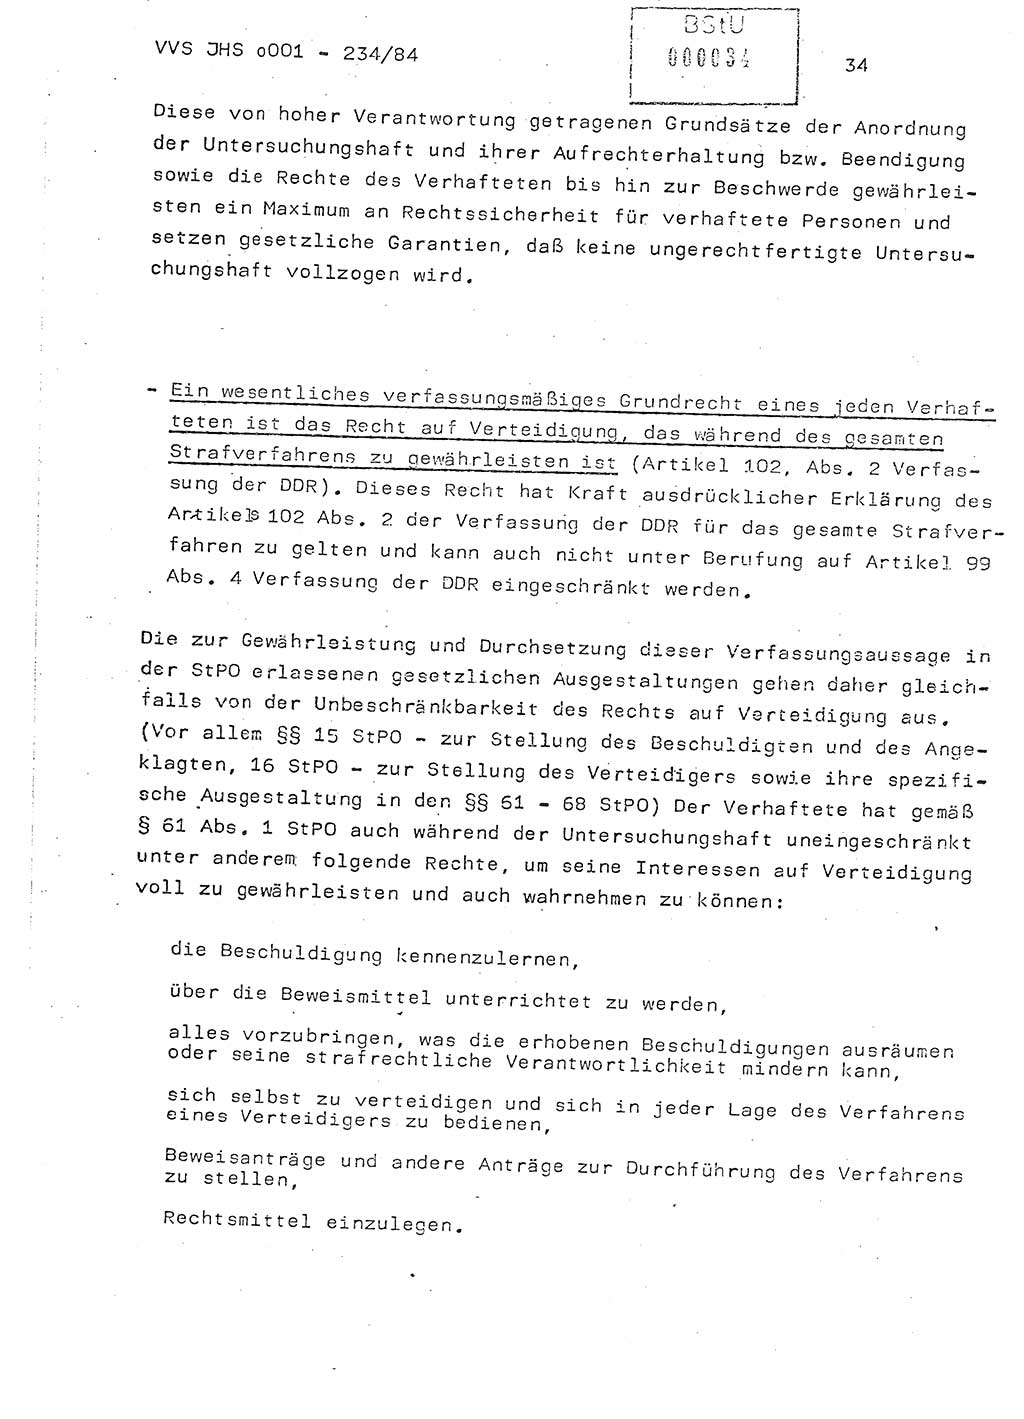 Dissertation Oberst Siegfried Rataizick (Abt. ⅩⅣ), Oberstleutnant Volkmar Heinz (Abt. ⅩⅣ), Oberstleutnant Werner Stein (HA Ⅸ), Hauptmann Heinz Conrad (JHS), Ministerium für Staatssicherheit (MfS) [Deutsche Demokratische Republik (DDR)], Juristische Hochschule (JHS), Vertrauliche Verschlußsache (VVS) o001-234/84, Potsdam 1984, Seite 34 (Diss. MfS DDR JHS VVS o001-234/84 1984, S. 34)